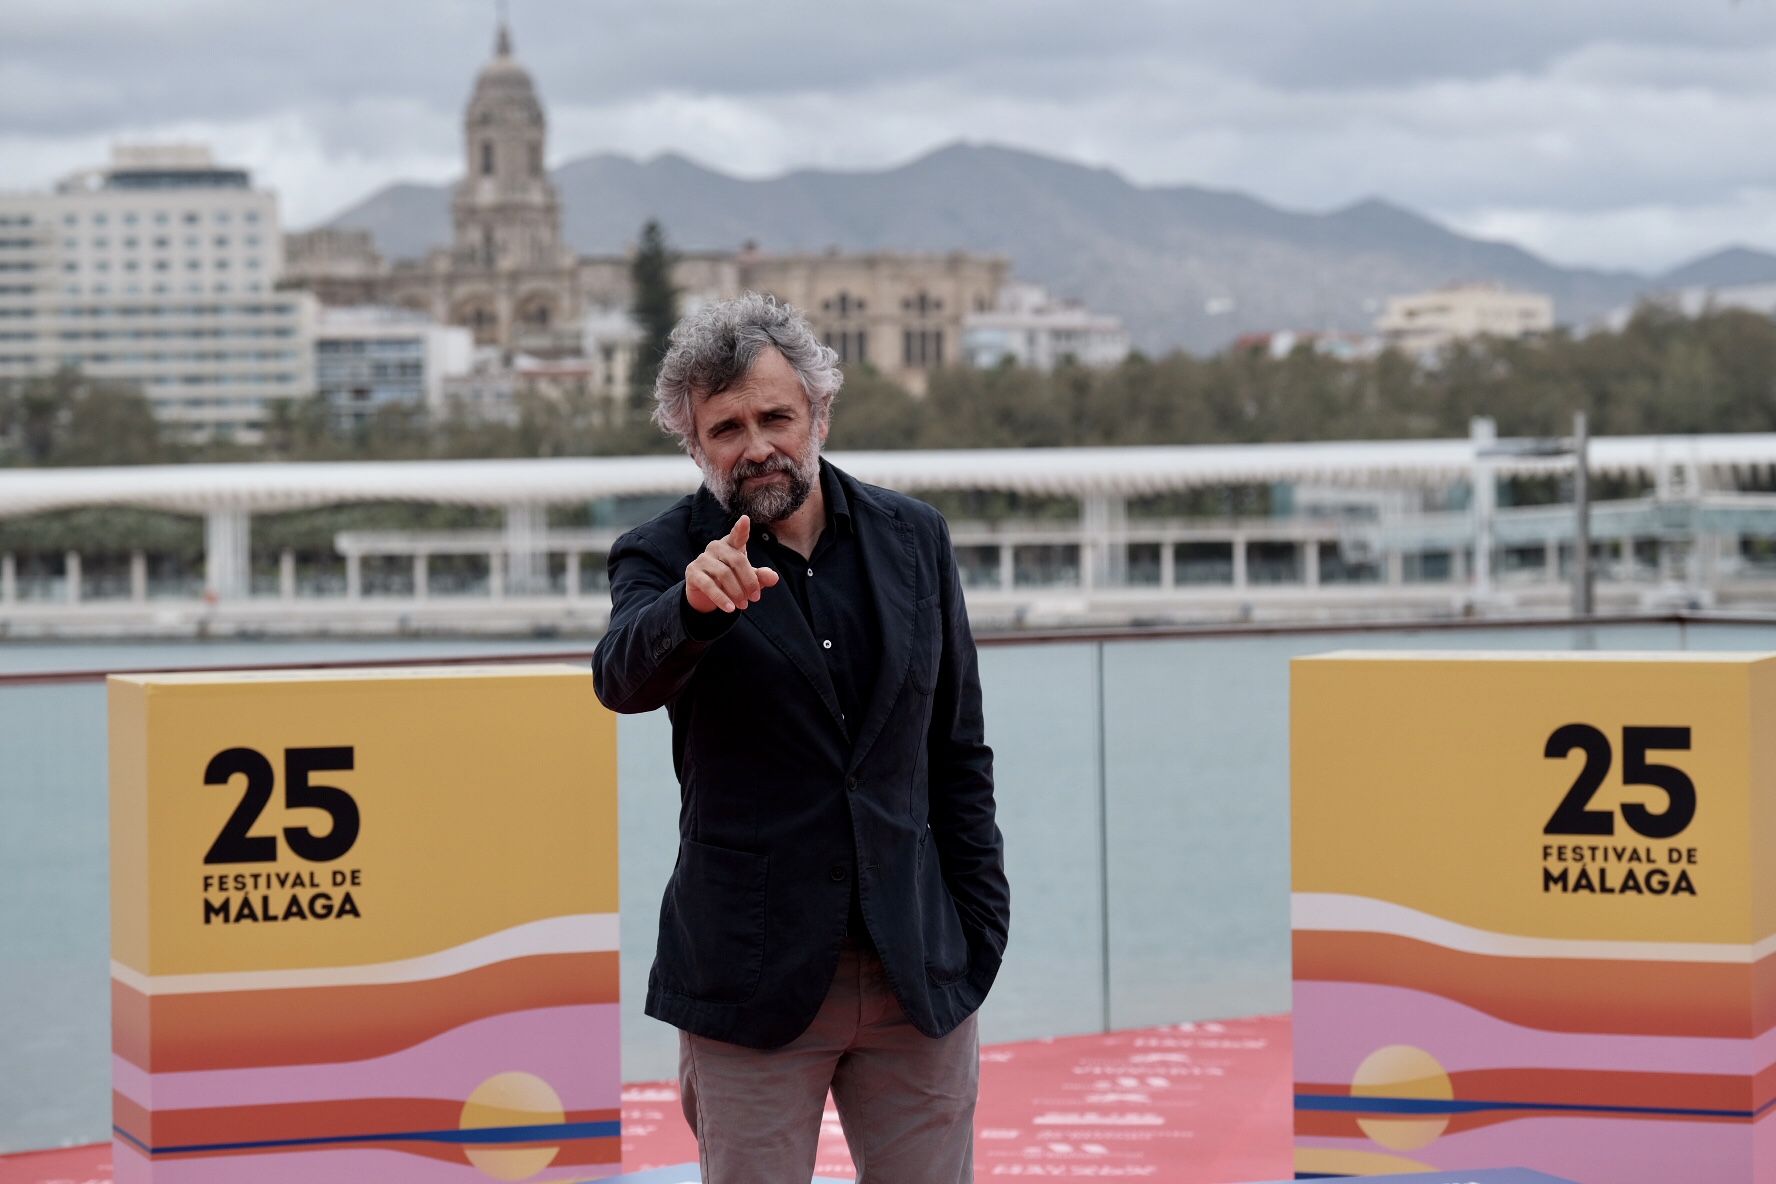 Festival de Málaga: Las imágenes de este miércoles, 23 de marzo